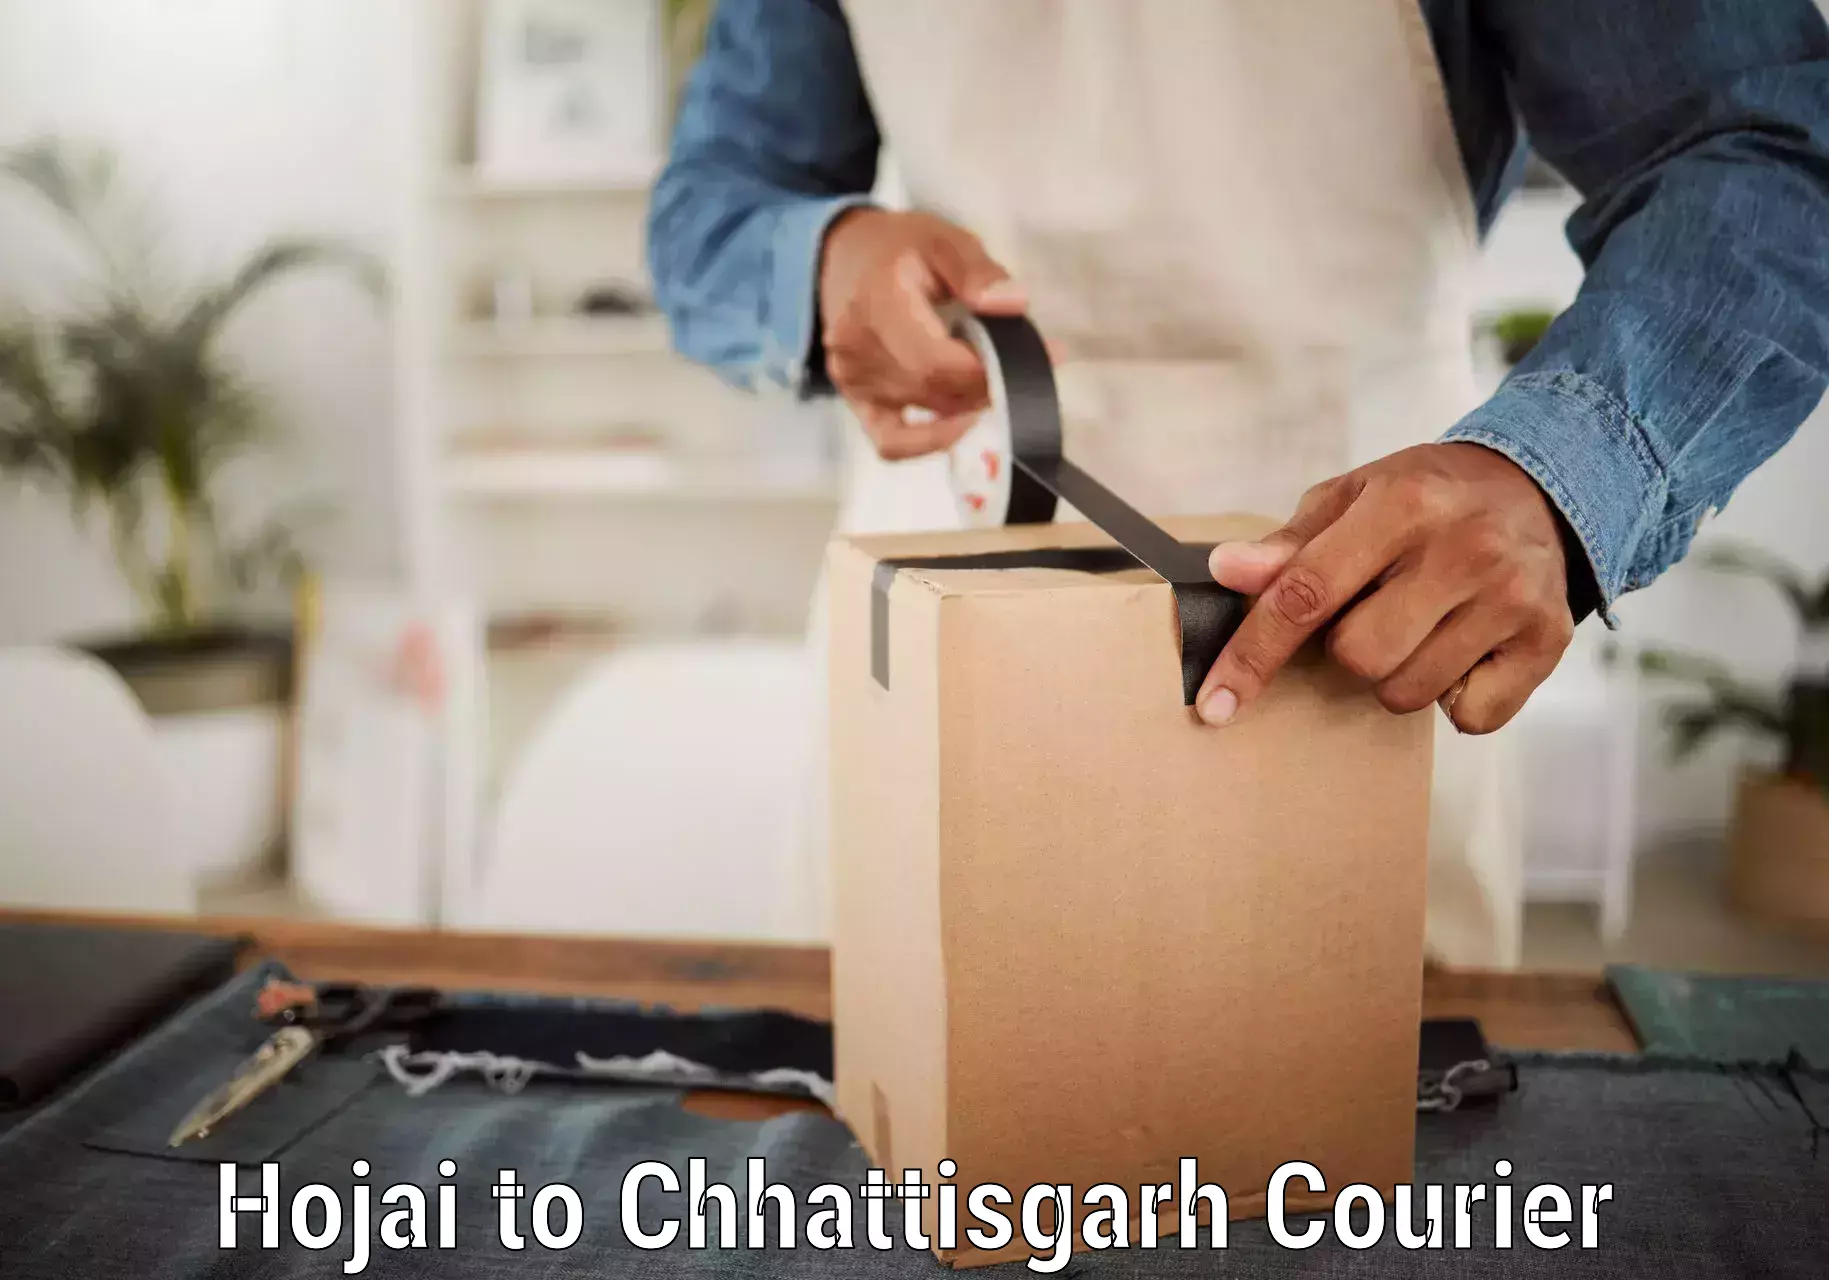 User-friendly delivery service Hojai to Korea Chhattisgarh